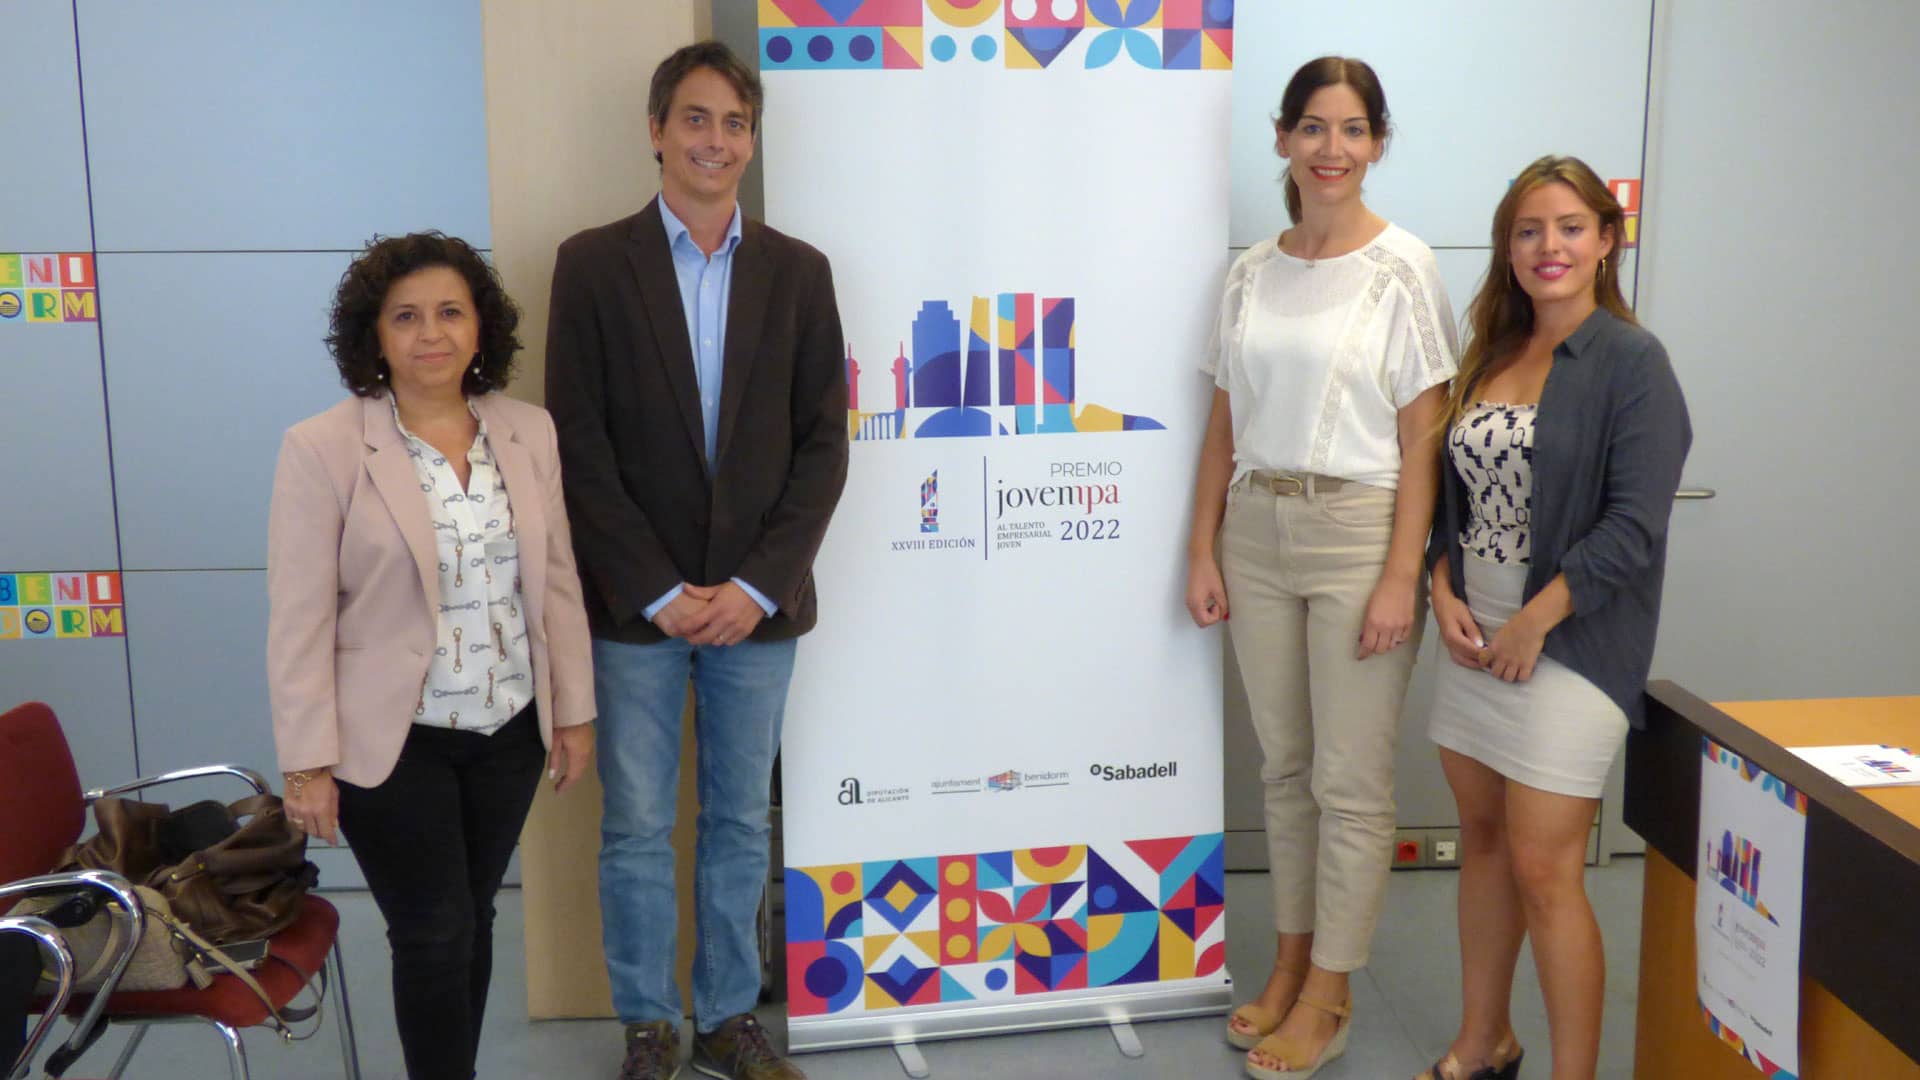 Benidorm acogerá el XXVIII Premio Jovempa 2022 al talento empresarial joven